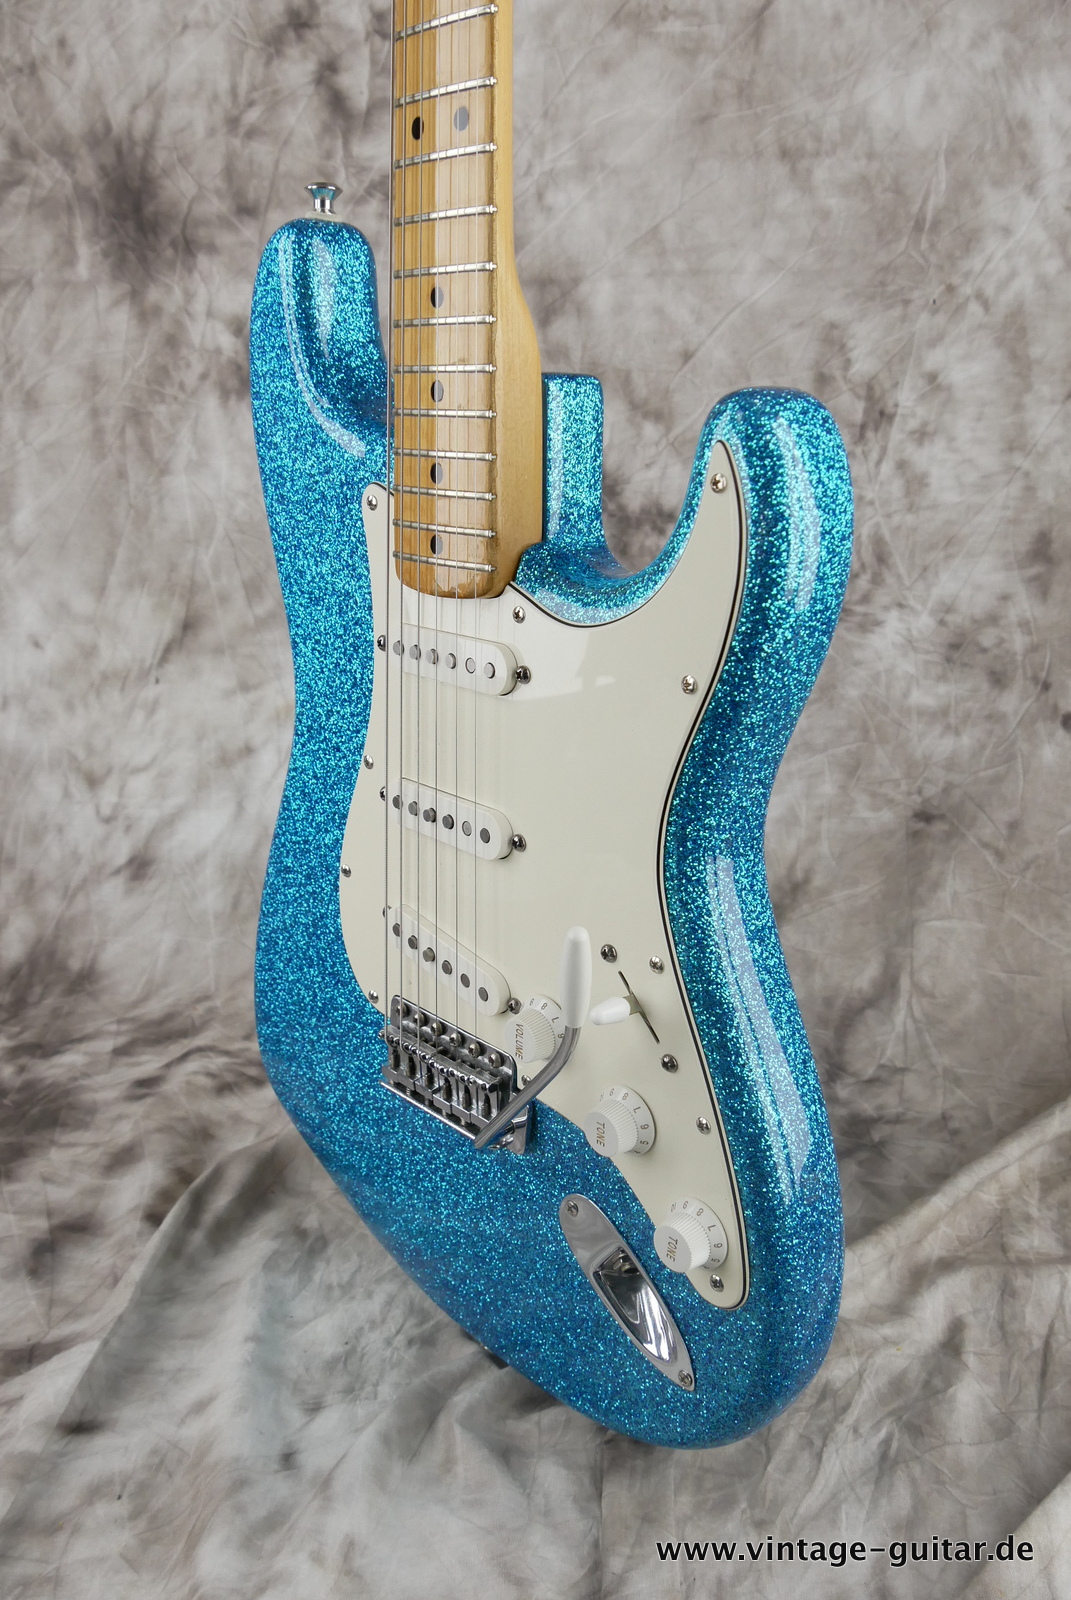 Fender-Stratocaster-1974c-blue-sparkle-010.JPG